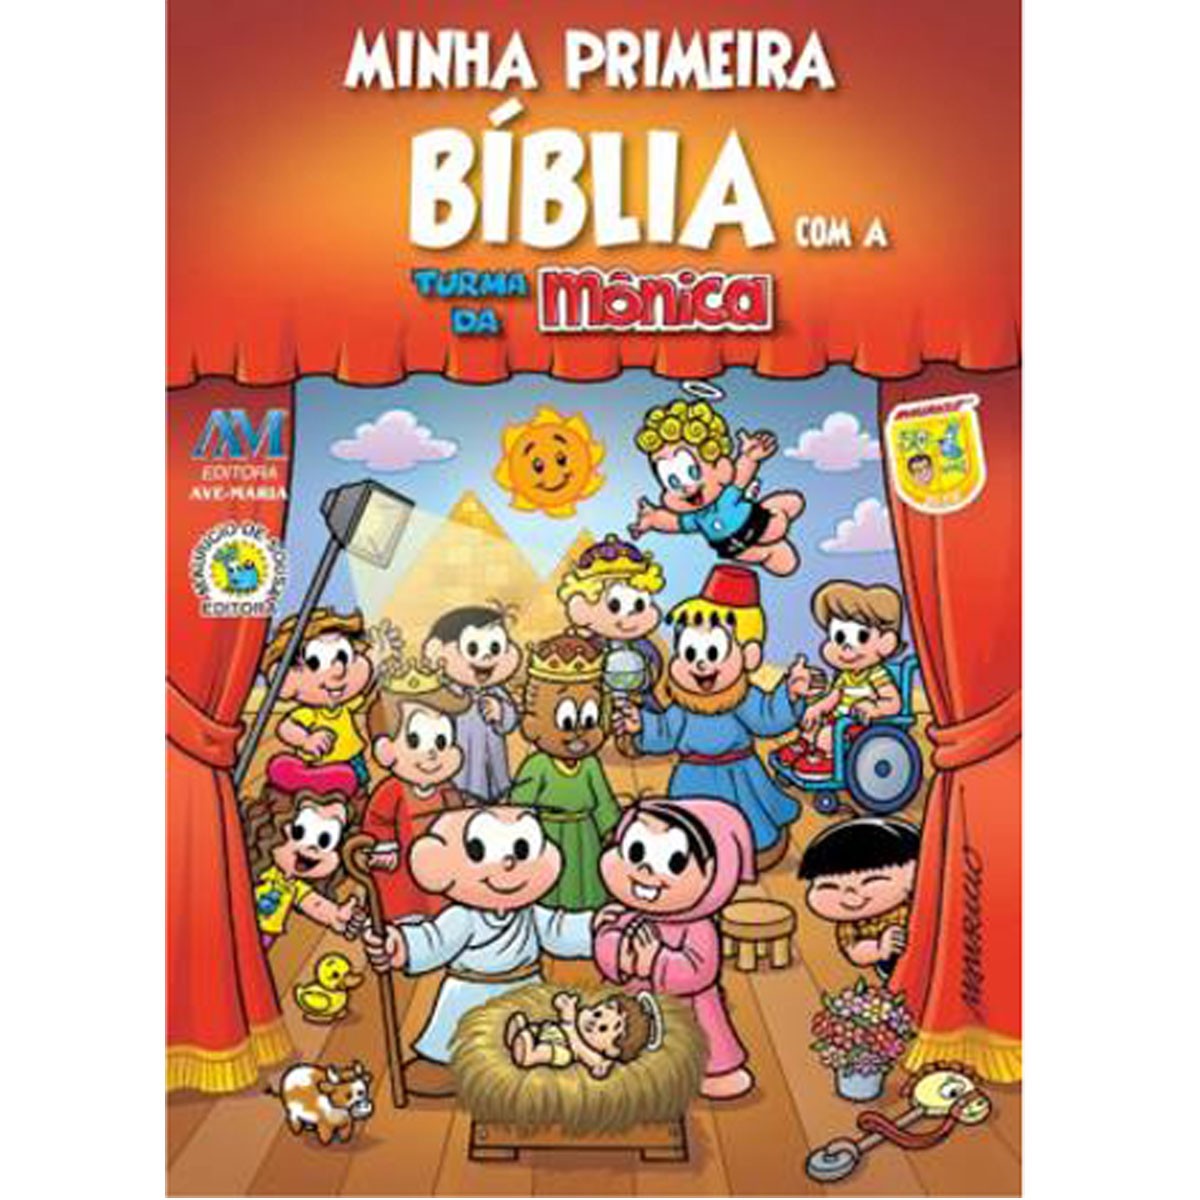 9788527613323 - MINHA PRIMEIRA BIBLIA COM A TURMA DA MONICA 200G EDITORA AVE MARIA